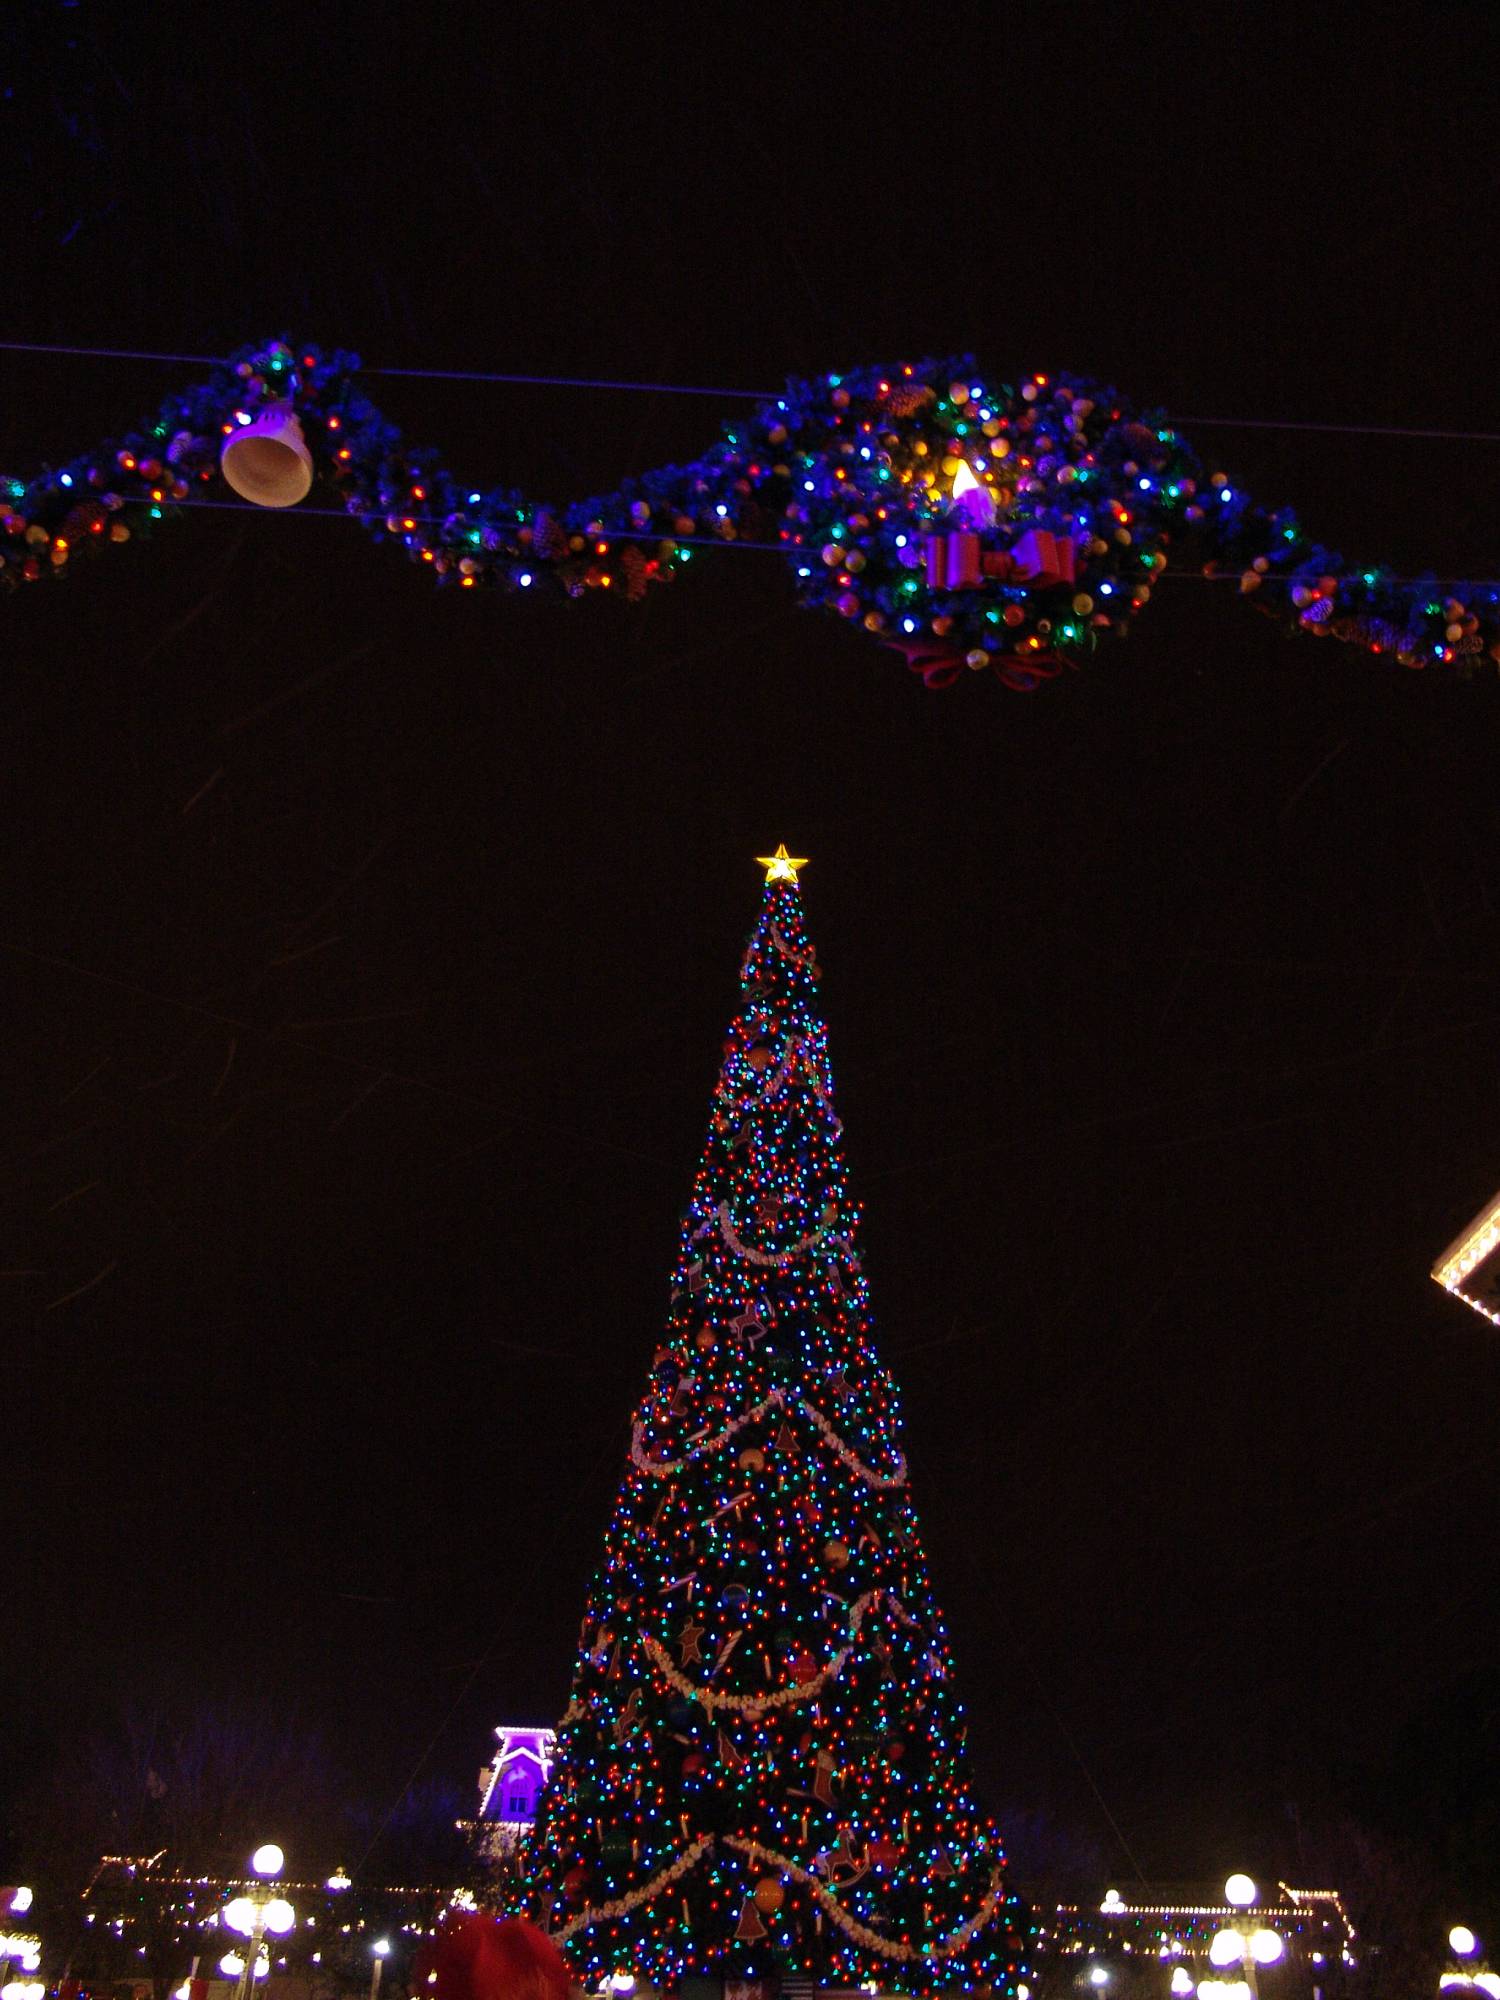 Magic Kingdom - Christmas tree